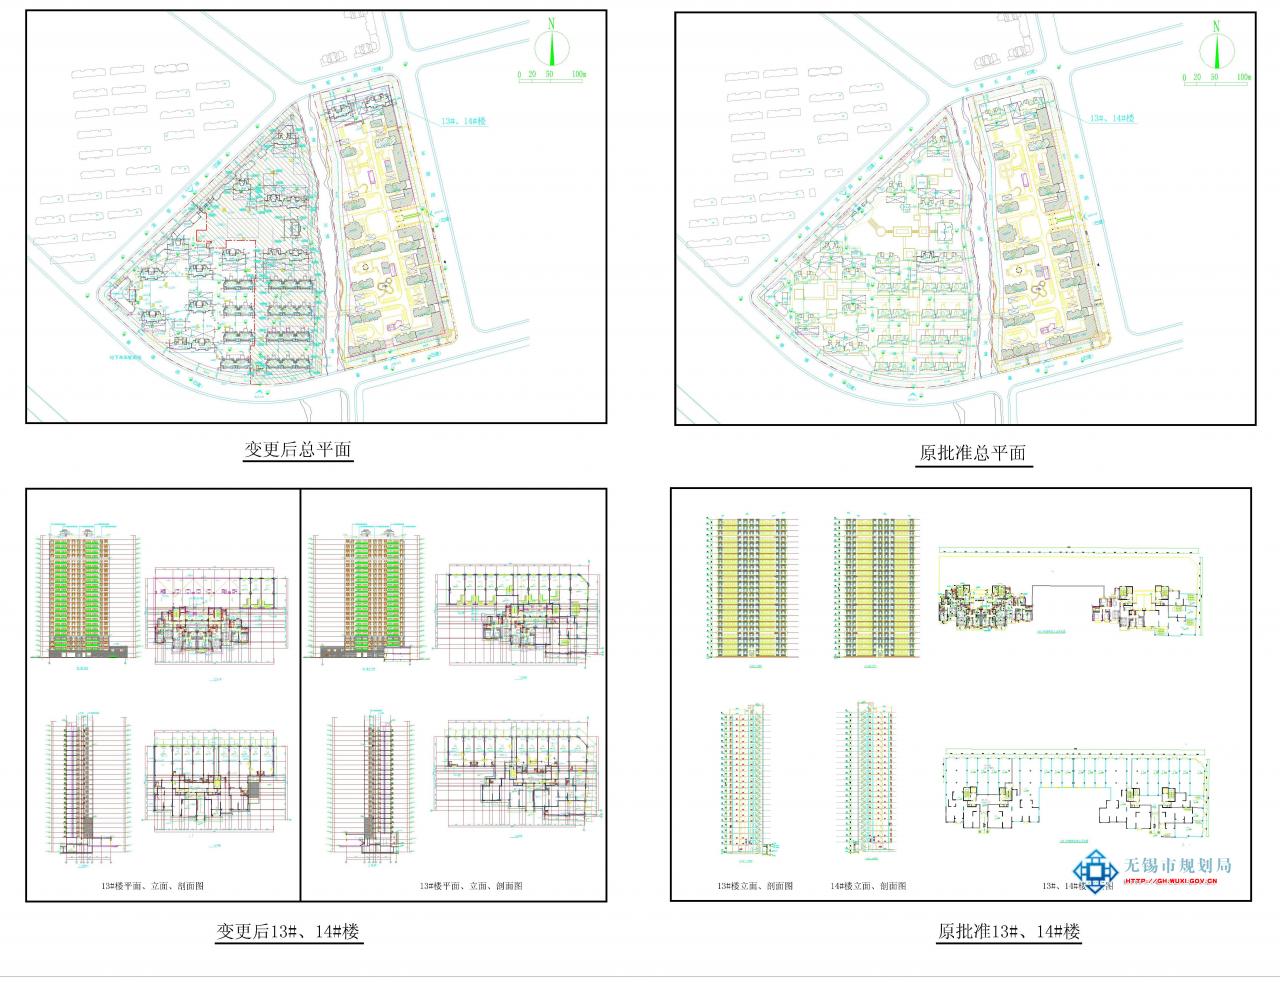 XDG-2009-92号地块开发建设住宅、商业用房项目（东地块二期第二批）建设工程规划许可证（变更）批前公示